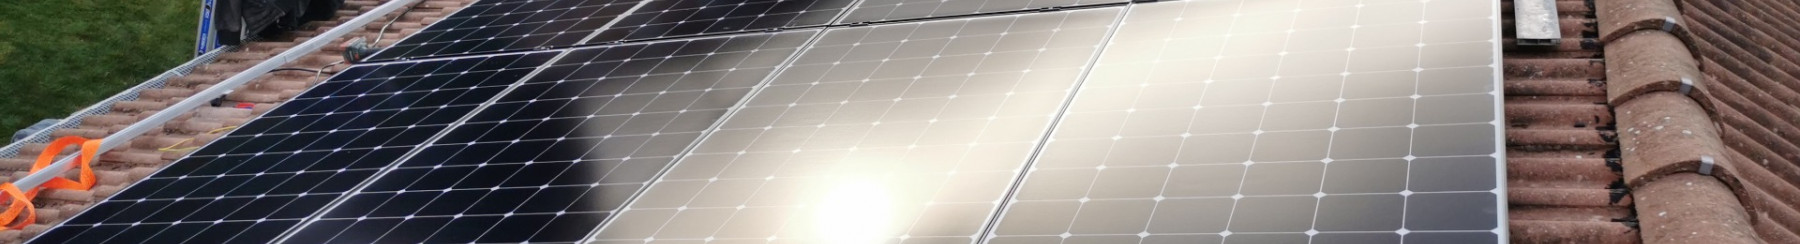 Installation photovoltaique à FONTAINES SUR SAONE